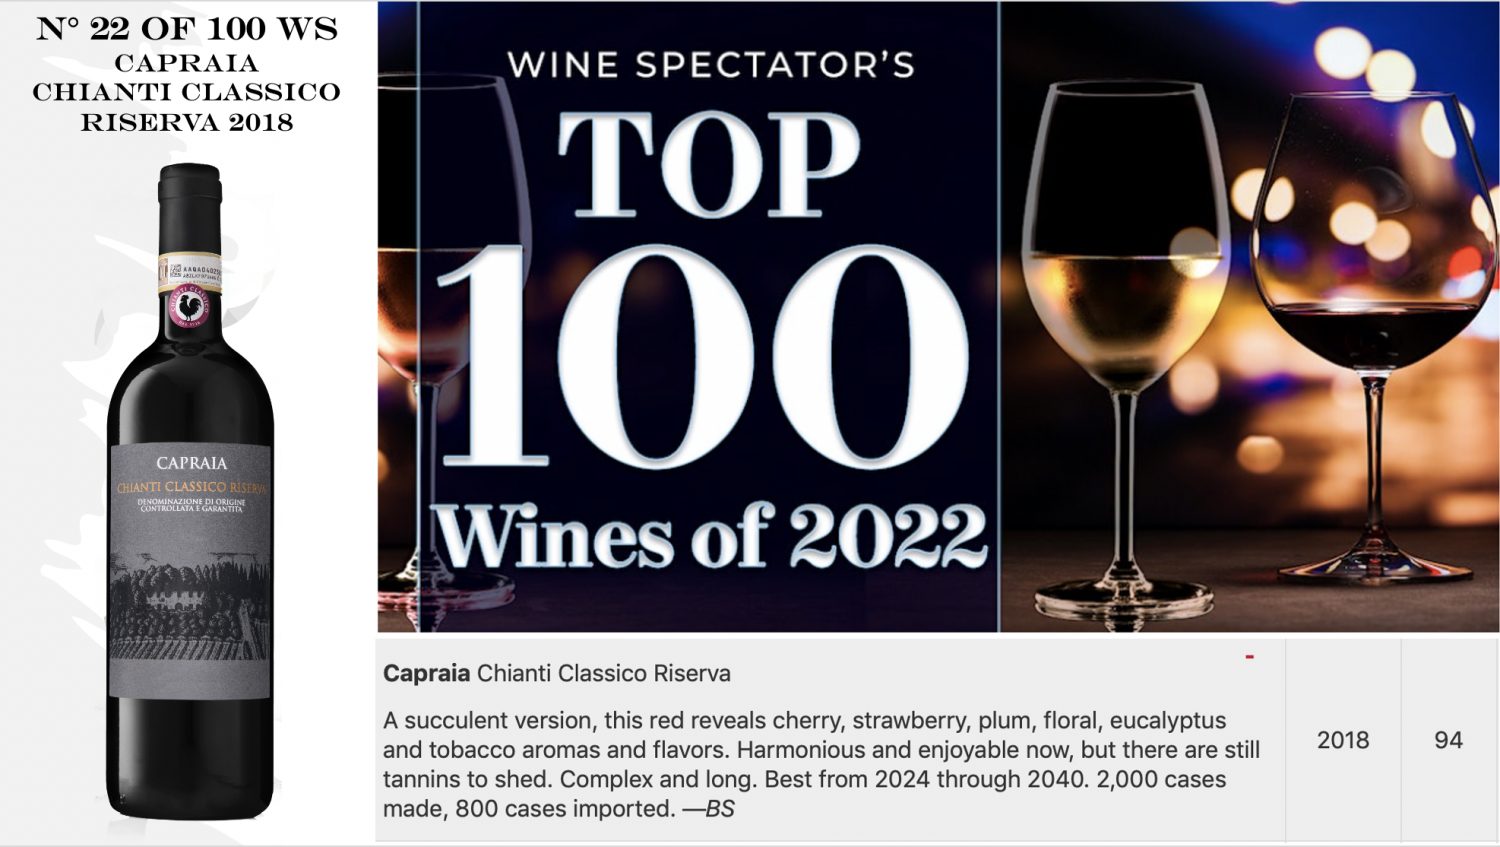 WINE SPECTATOR'S TOP 100 - CAPRAIA RISERVA 2018 AT